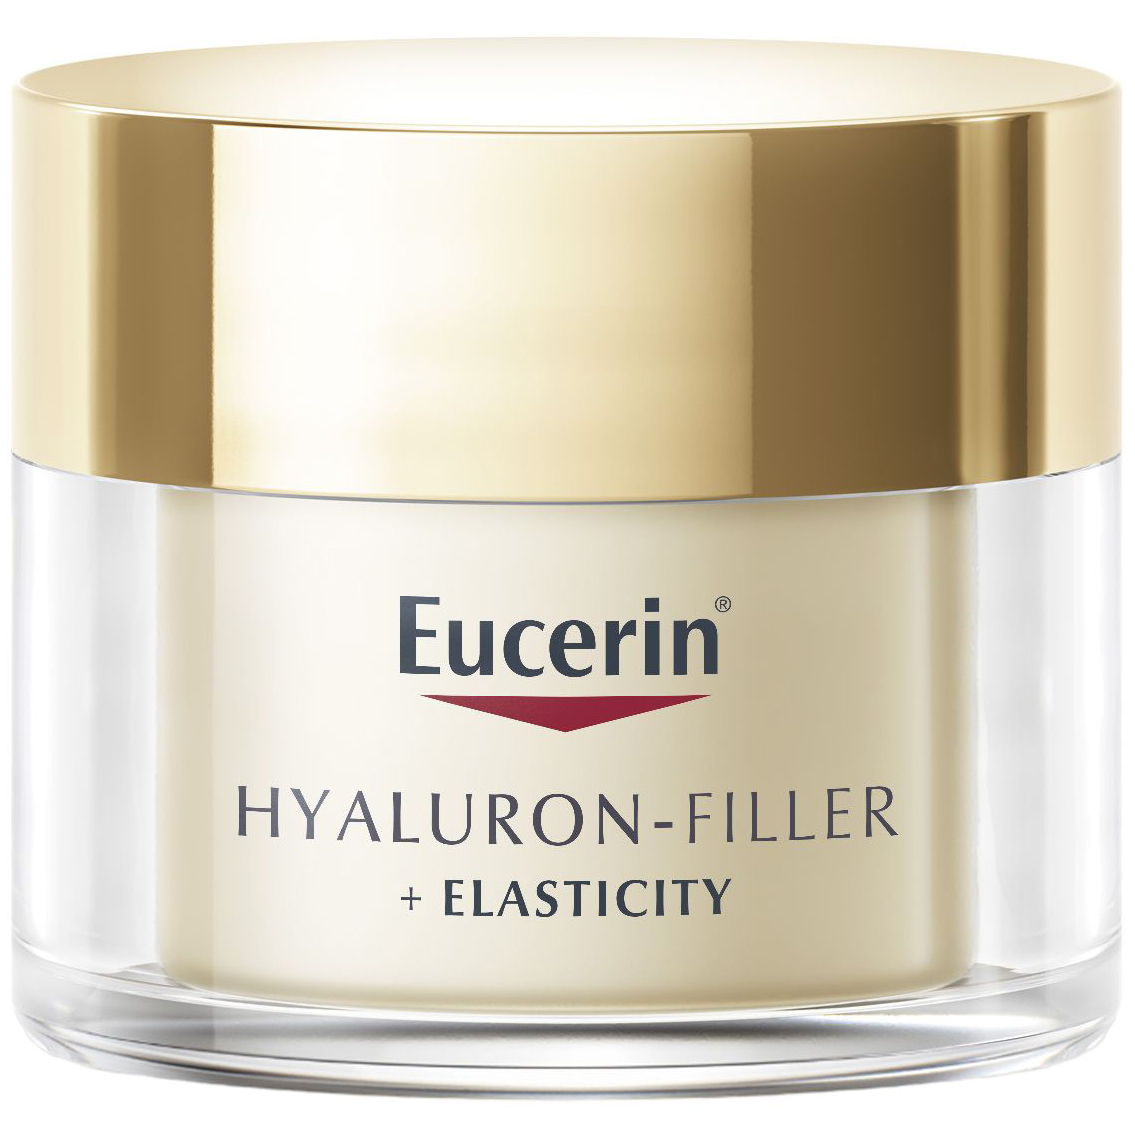 Дневной крем Eucerin Hyaluron-Filler + Elasticity SPF 15 для биоревитализации и повышения упругости кожи 50 мл - фото 1